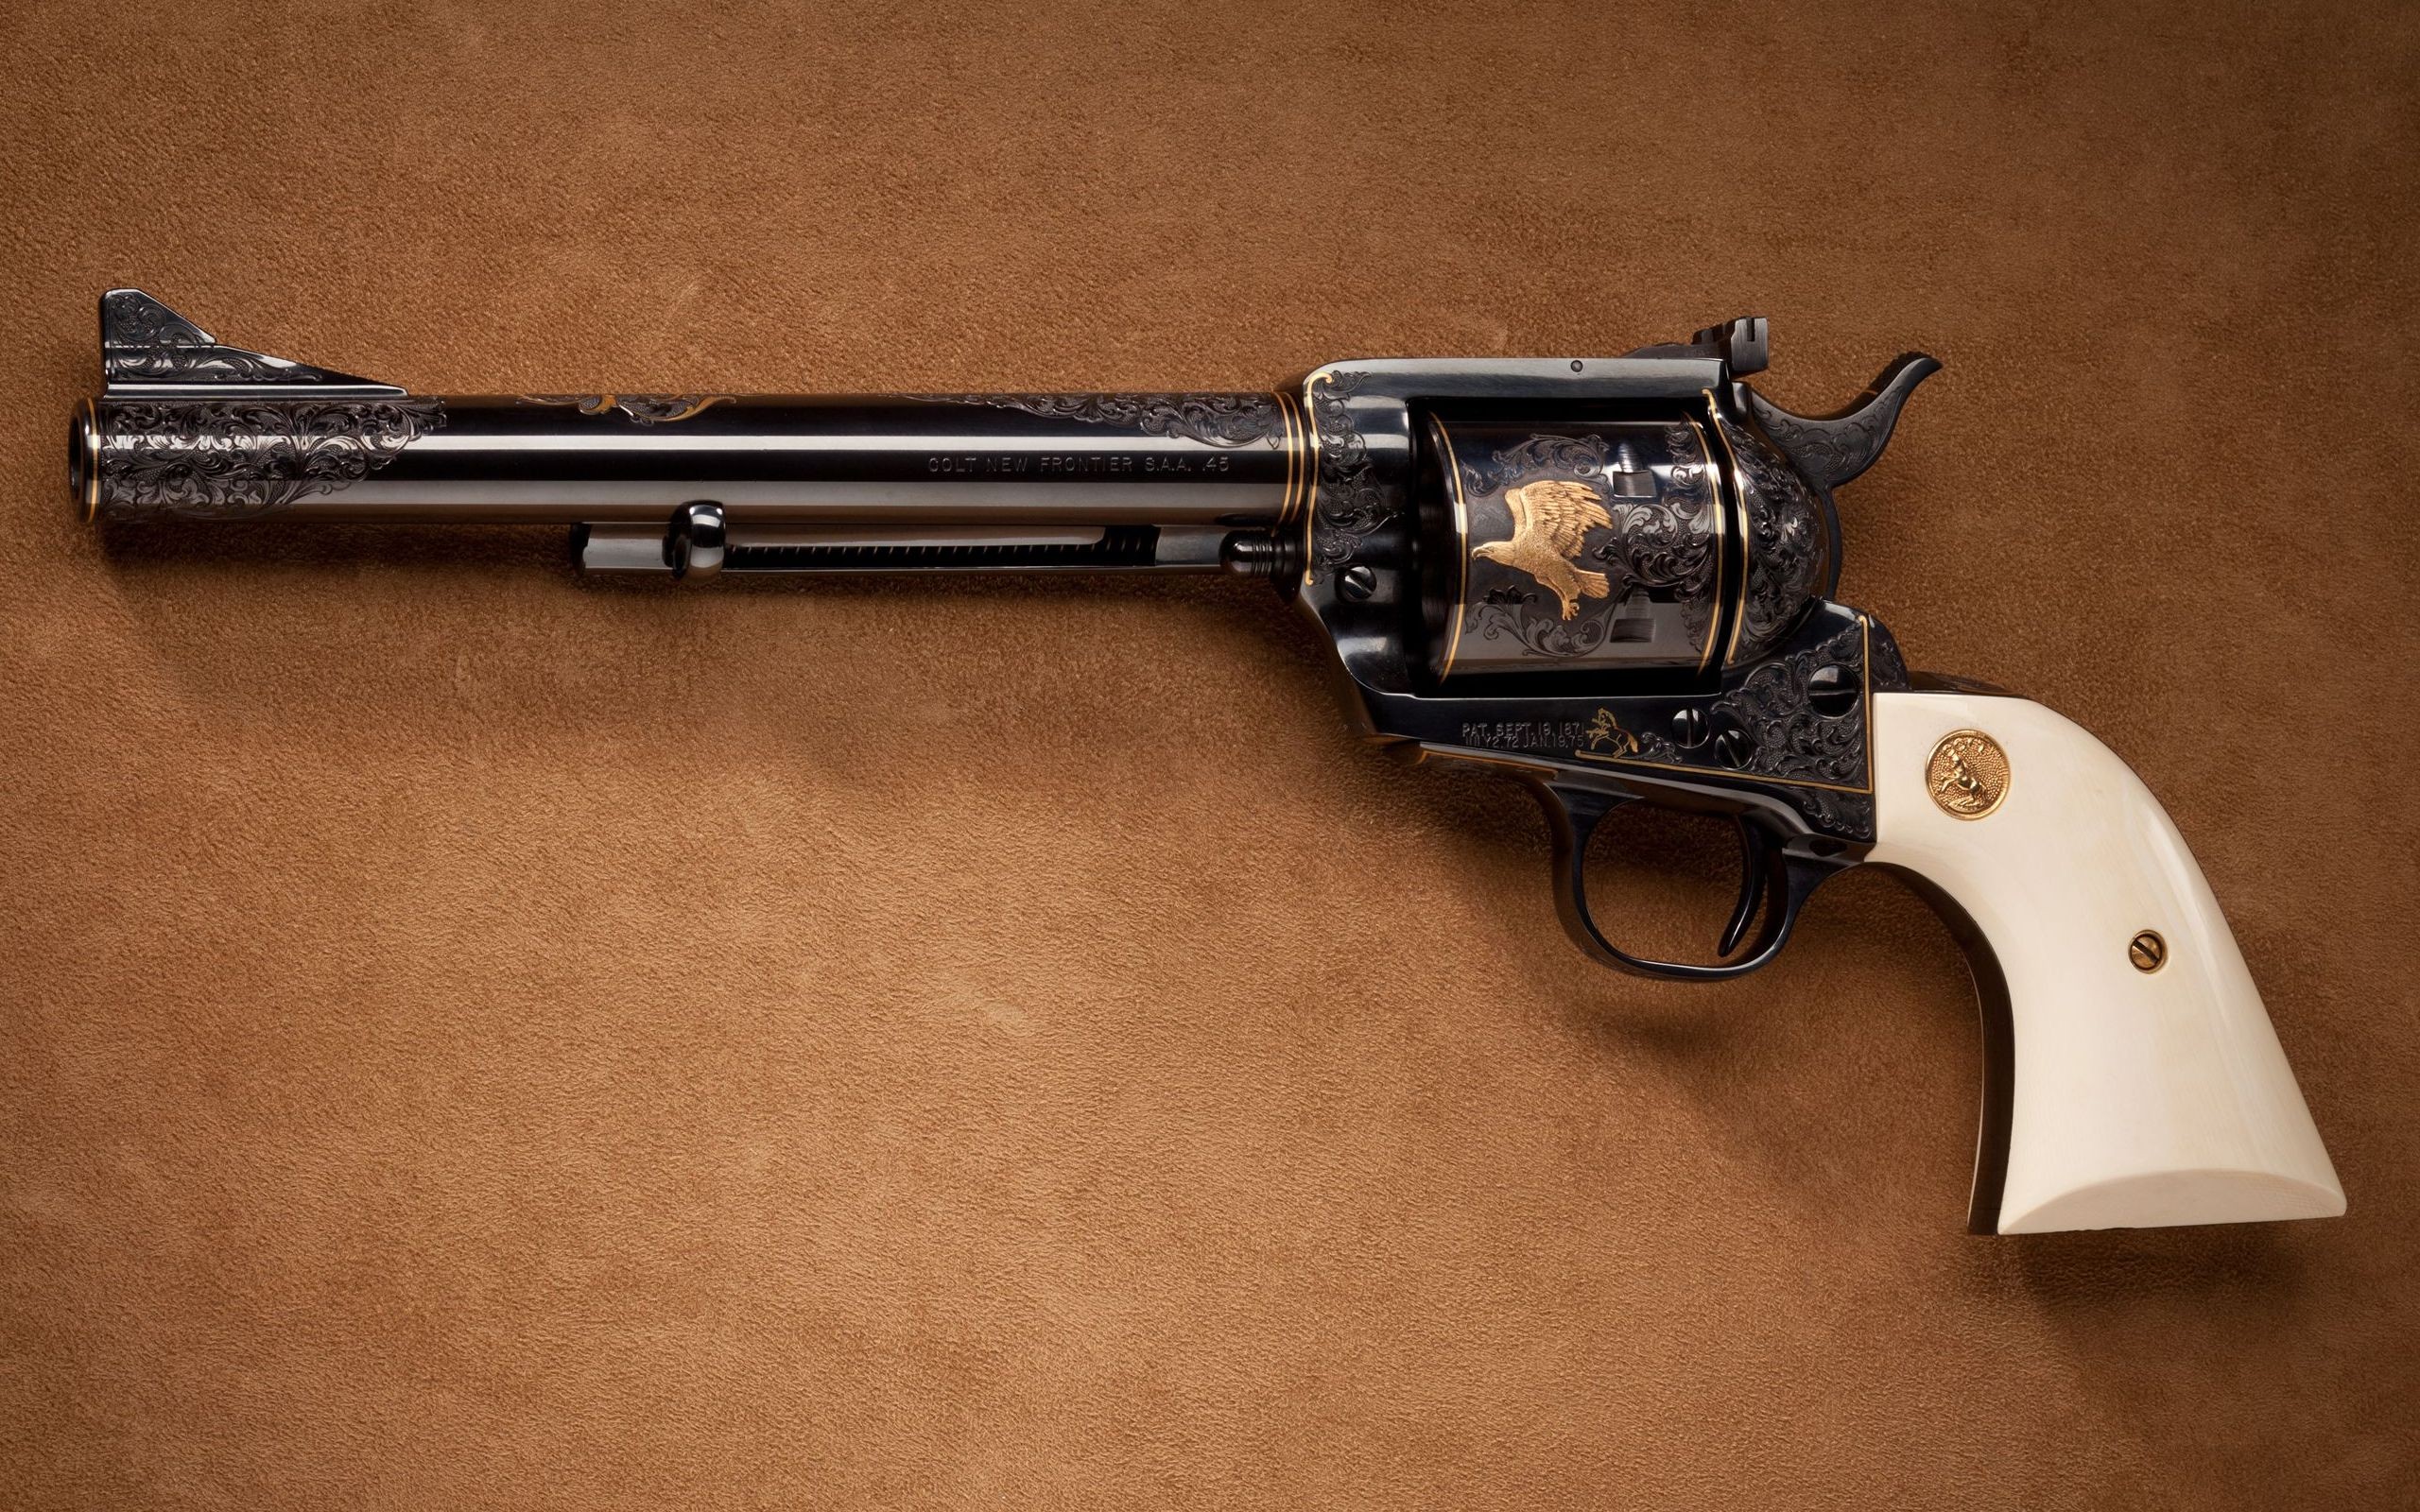 Скачать обои бесплатно Оружие, Револьвер Colt New Frontier картинка на рабочий стол ПК